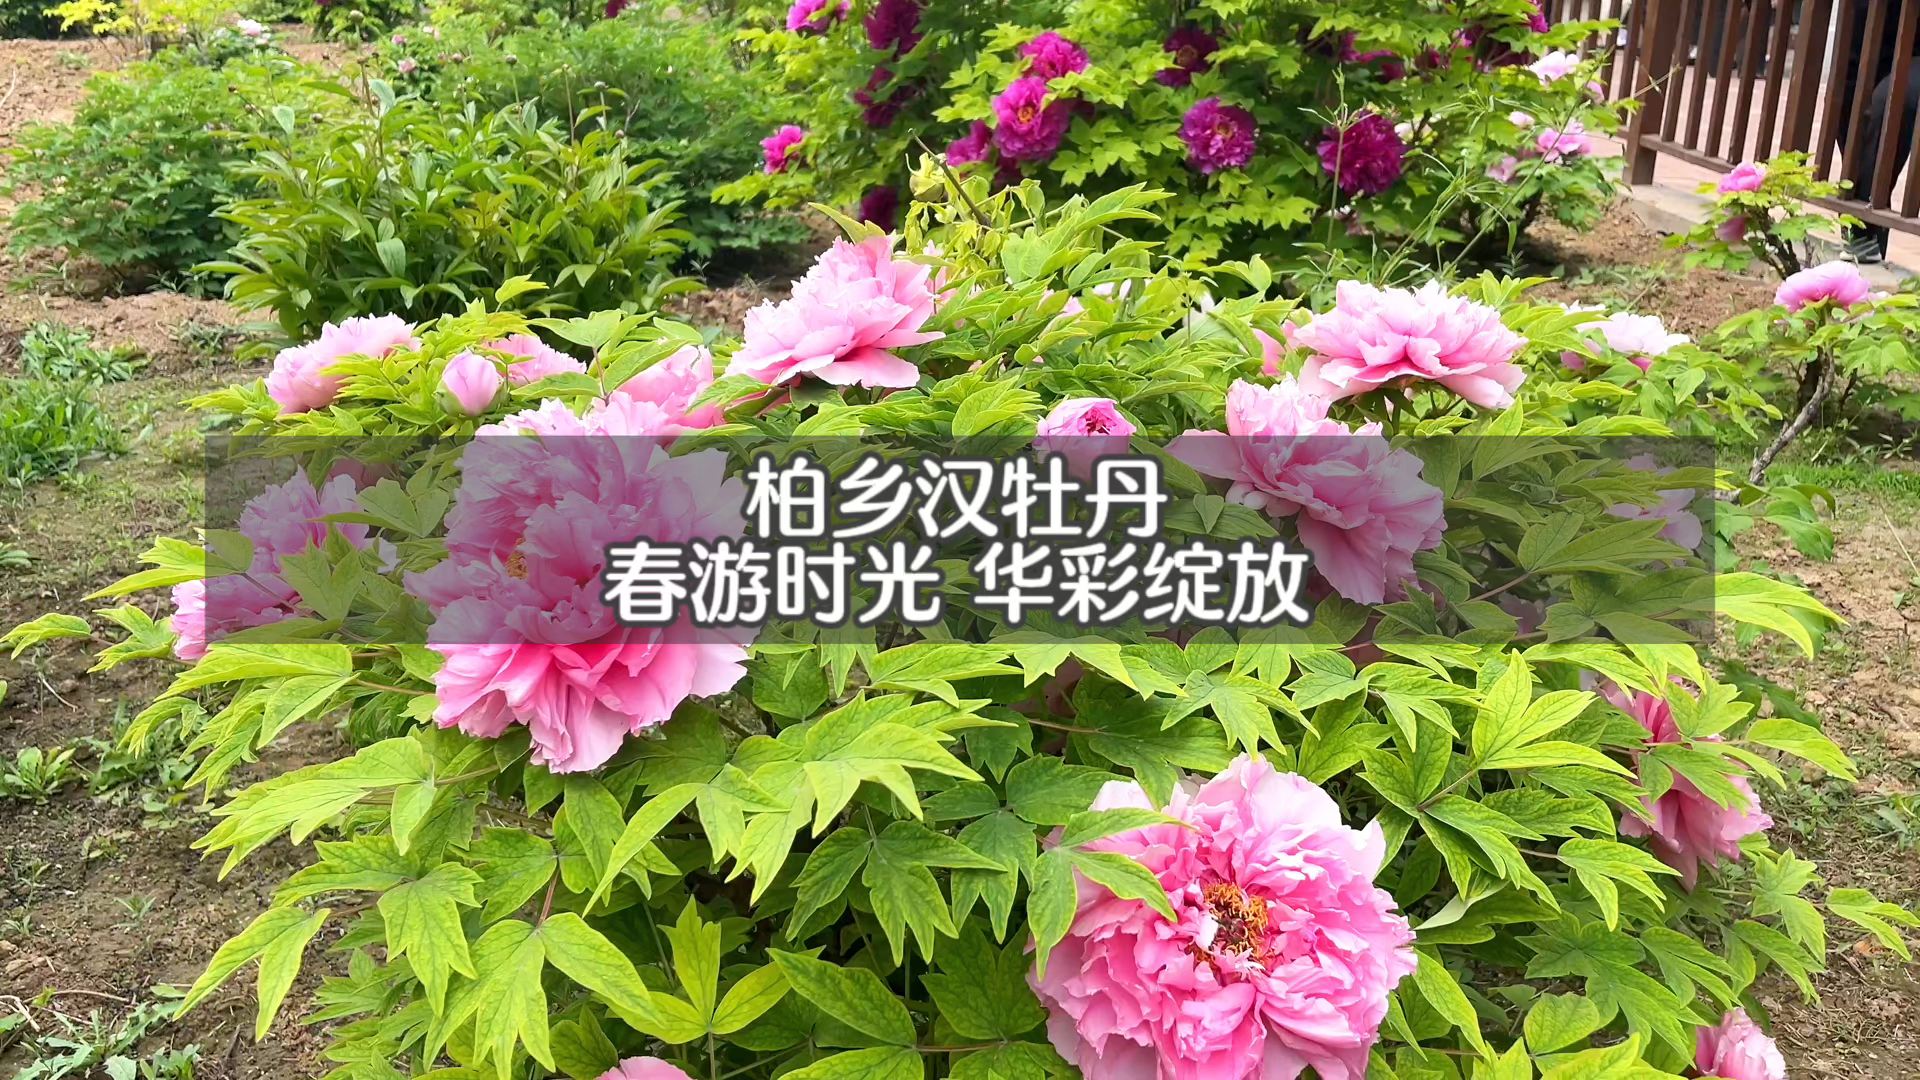 汉牡丹园牡丹已进入最佳观赏期”春暖花开！